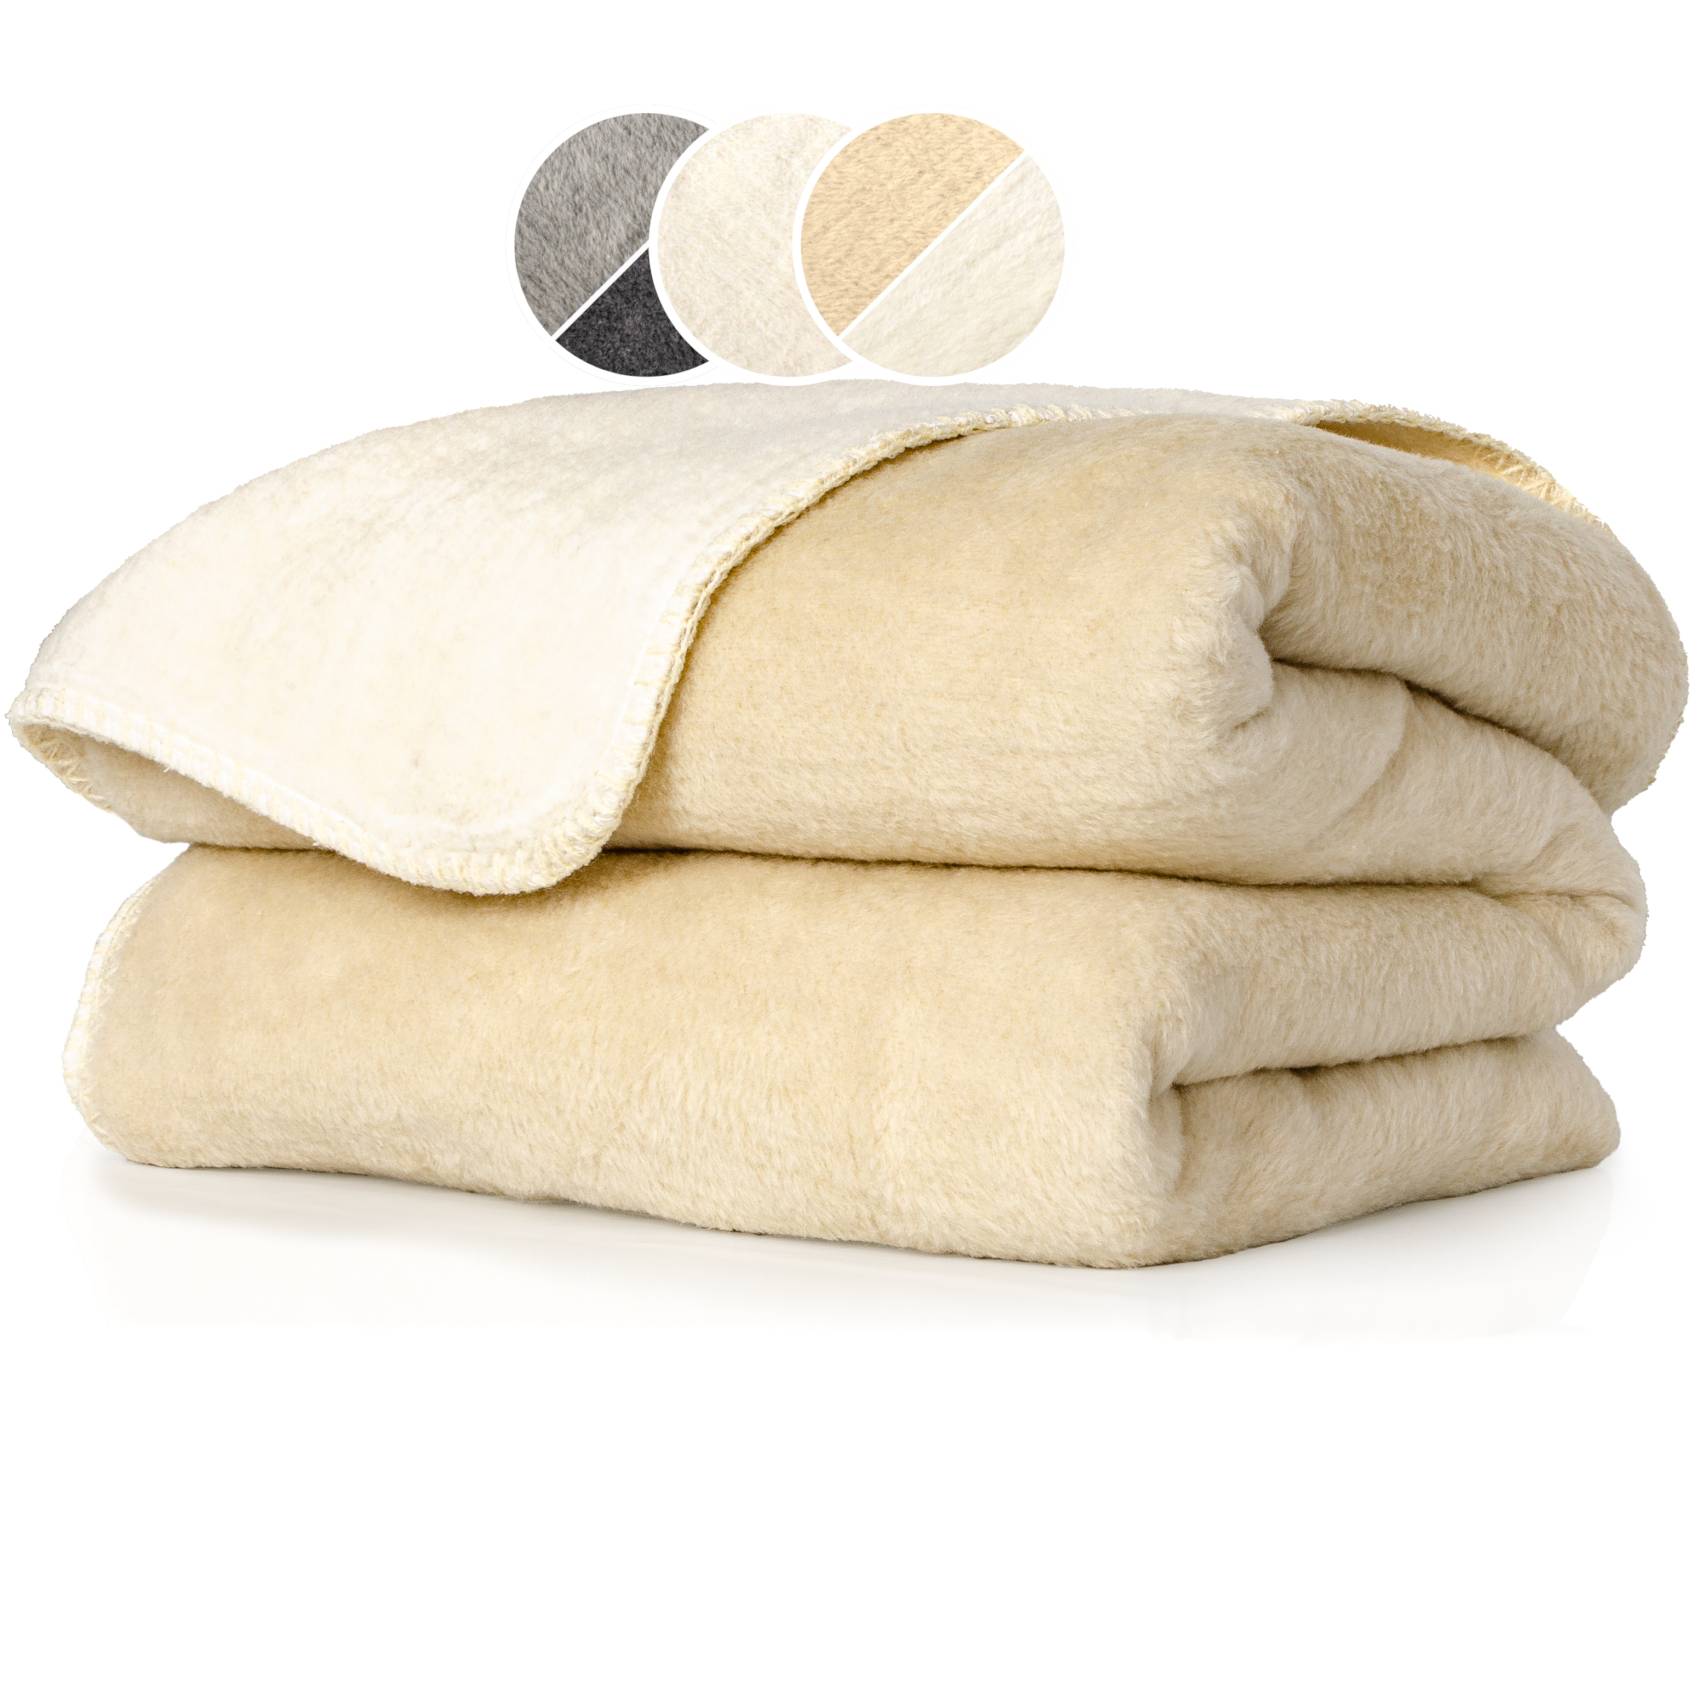 Wohndecke Tagesdecke Uni vieles mehr Dralon Premium Baumwolle Wachstuchtischdecken & Kuscheldecke Decke -